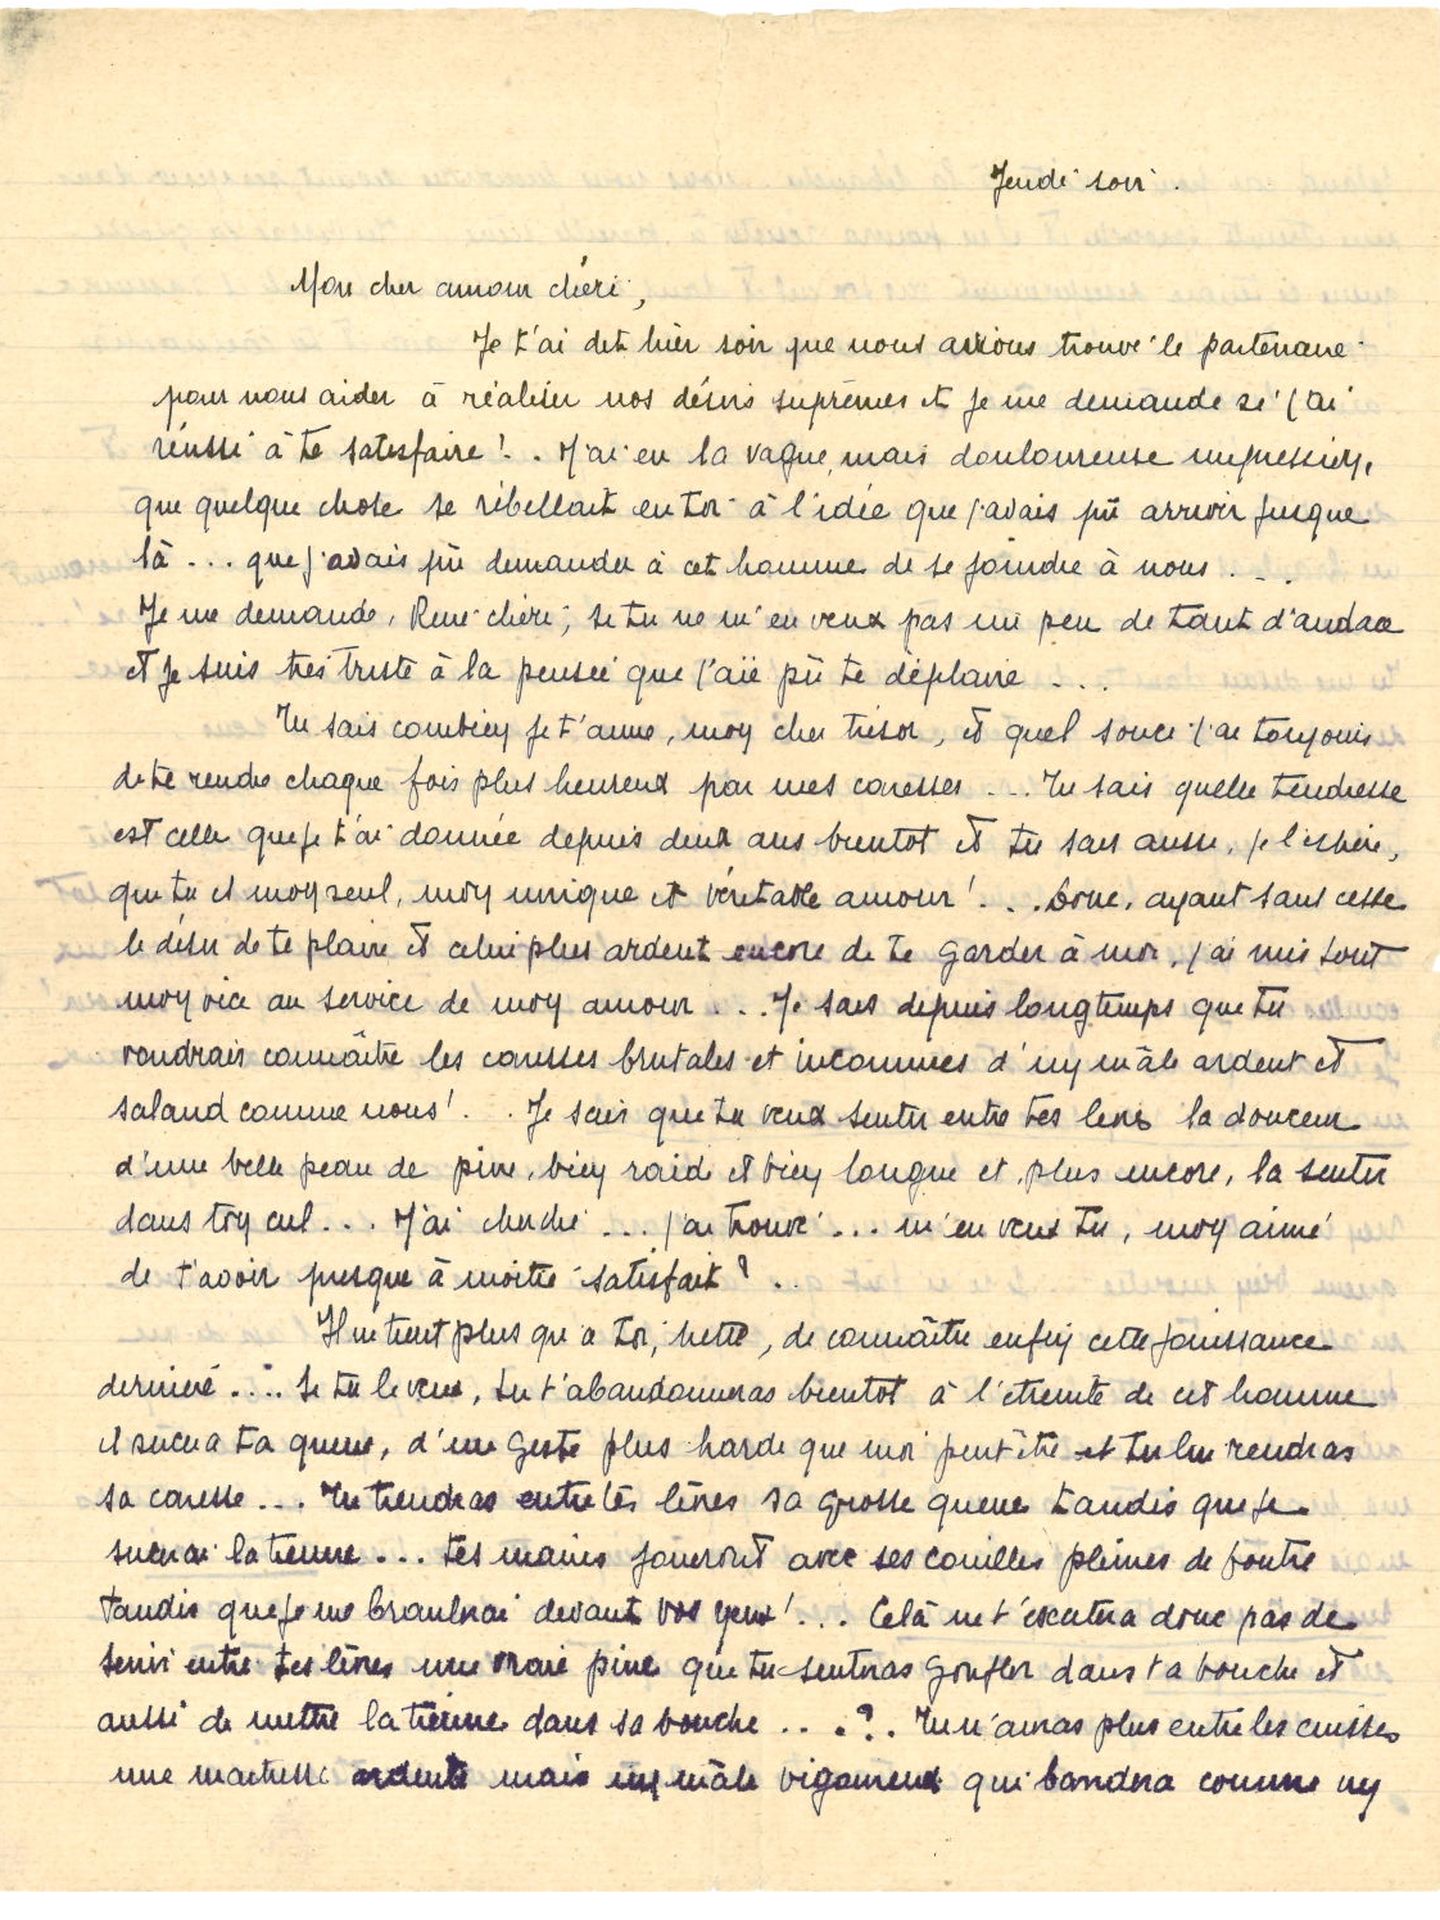 Una de las cartas escritas por Mademoiselle S. a finales de los años veinte